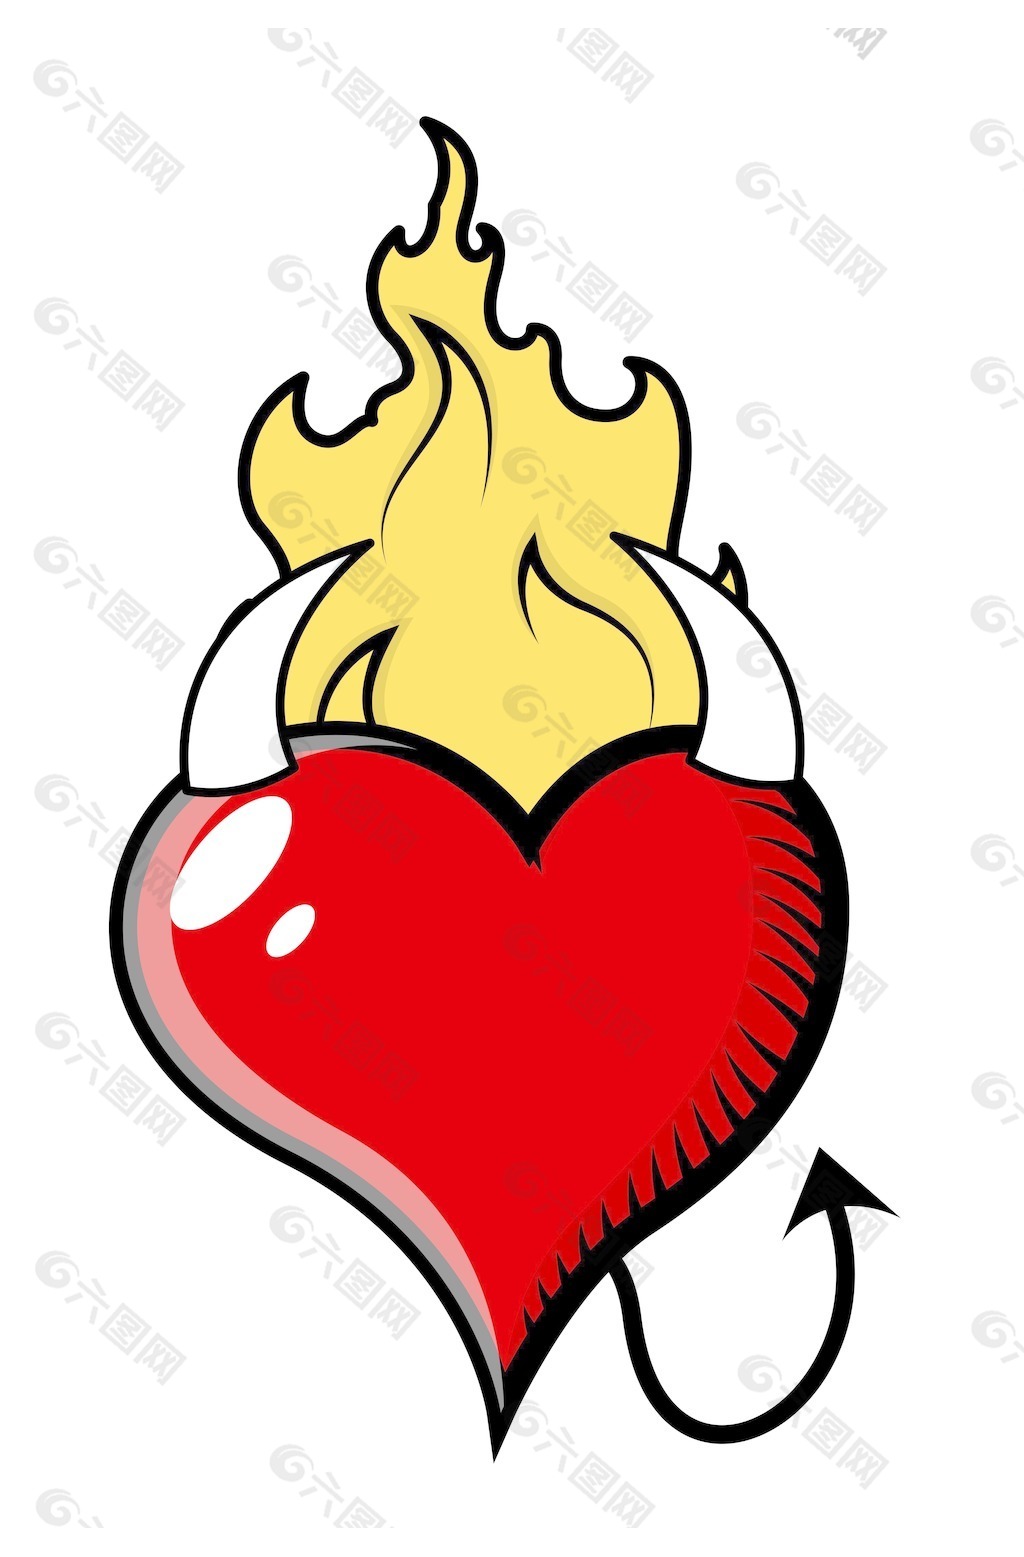 在火焰中燃烧-邪恶的心向量图